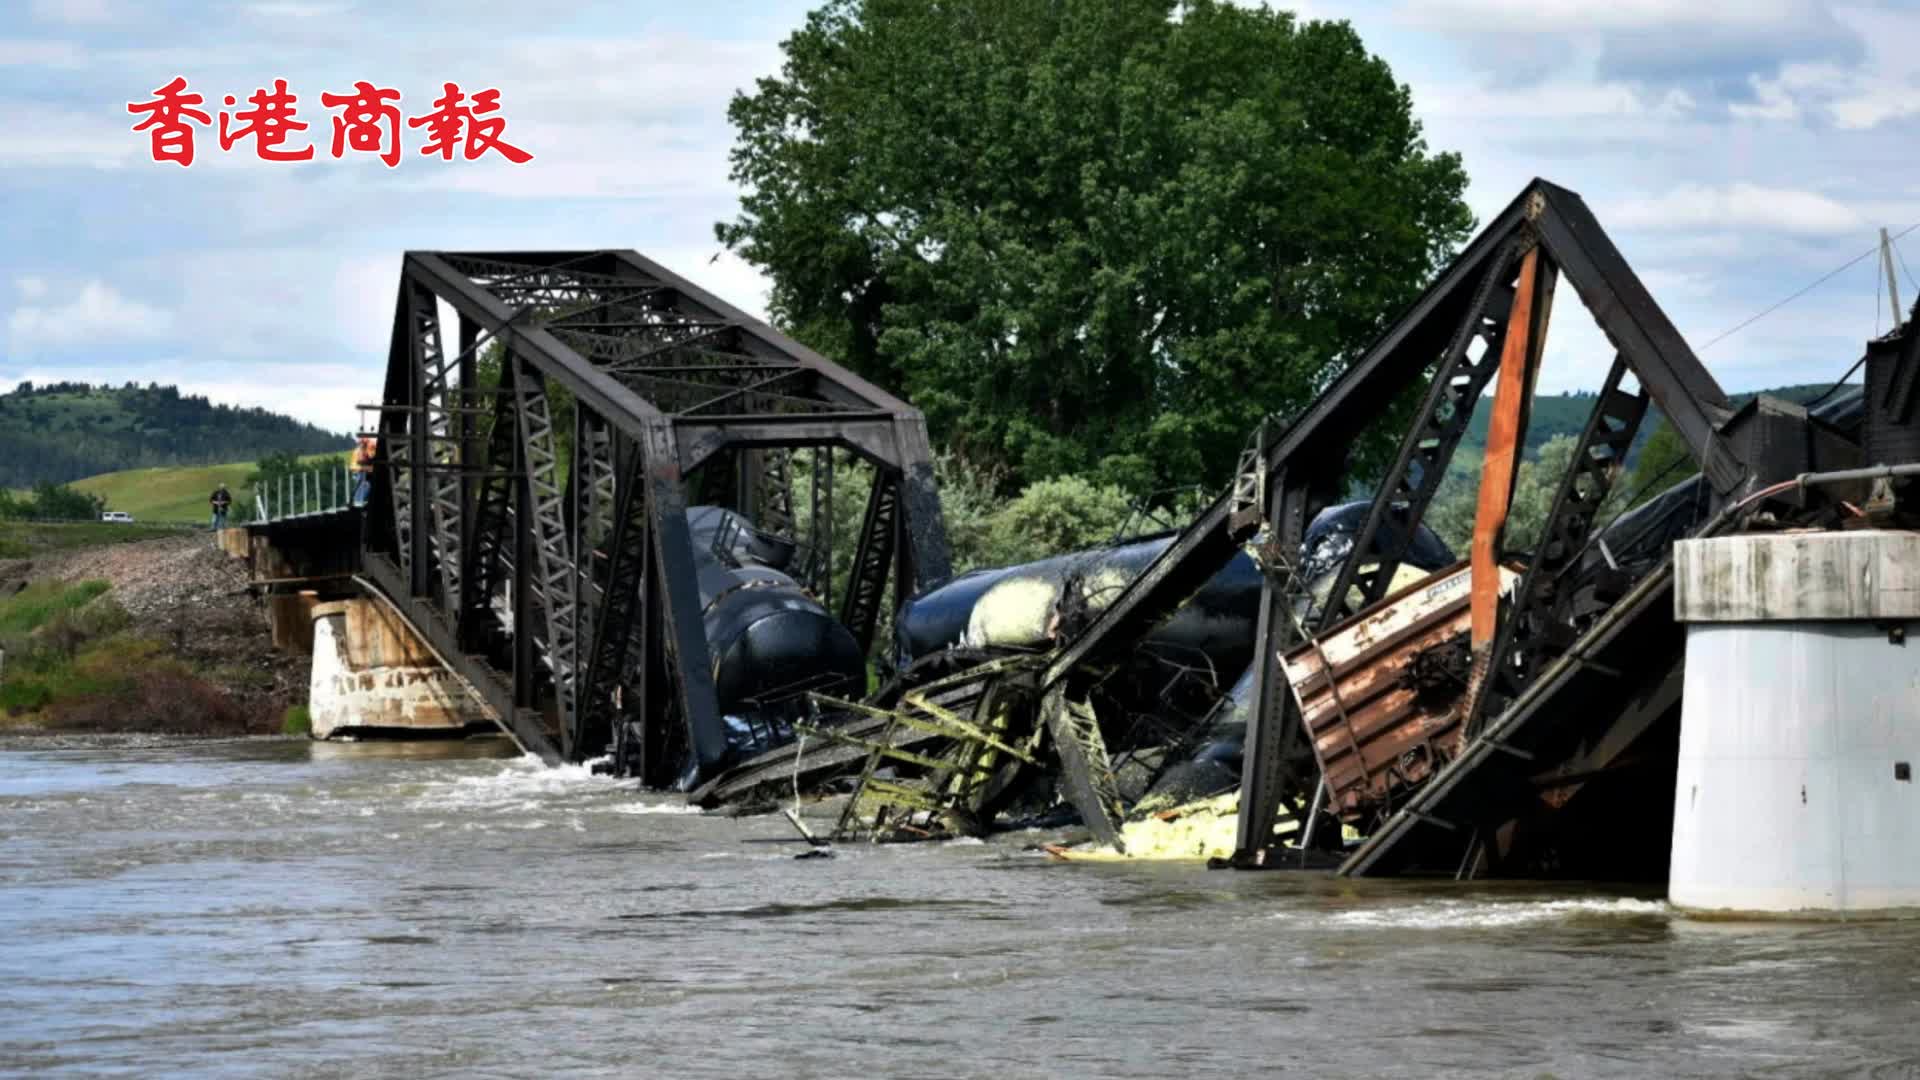 有片 | 美蒙大拿州發生橋樑倒塌事故 載有危險化學品的列車落入河中